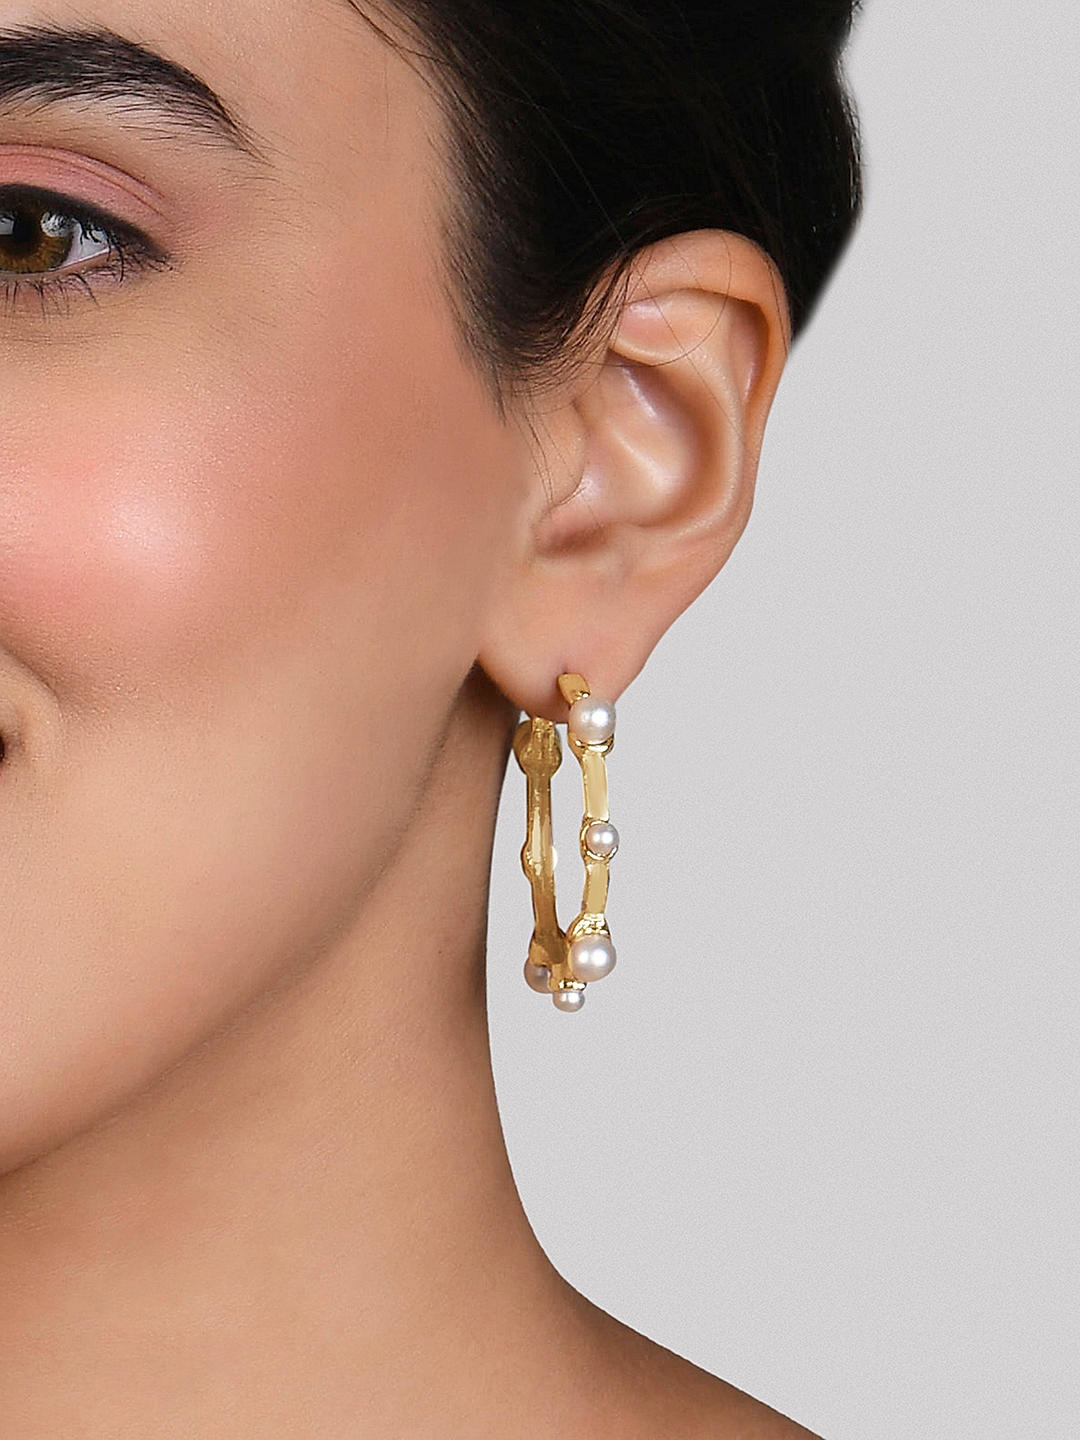 Celebrities love Jenny Bird's under-$100 hoop earrings